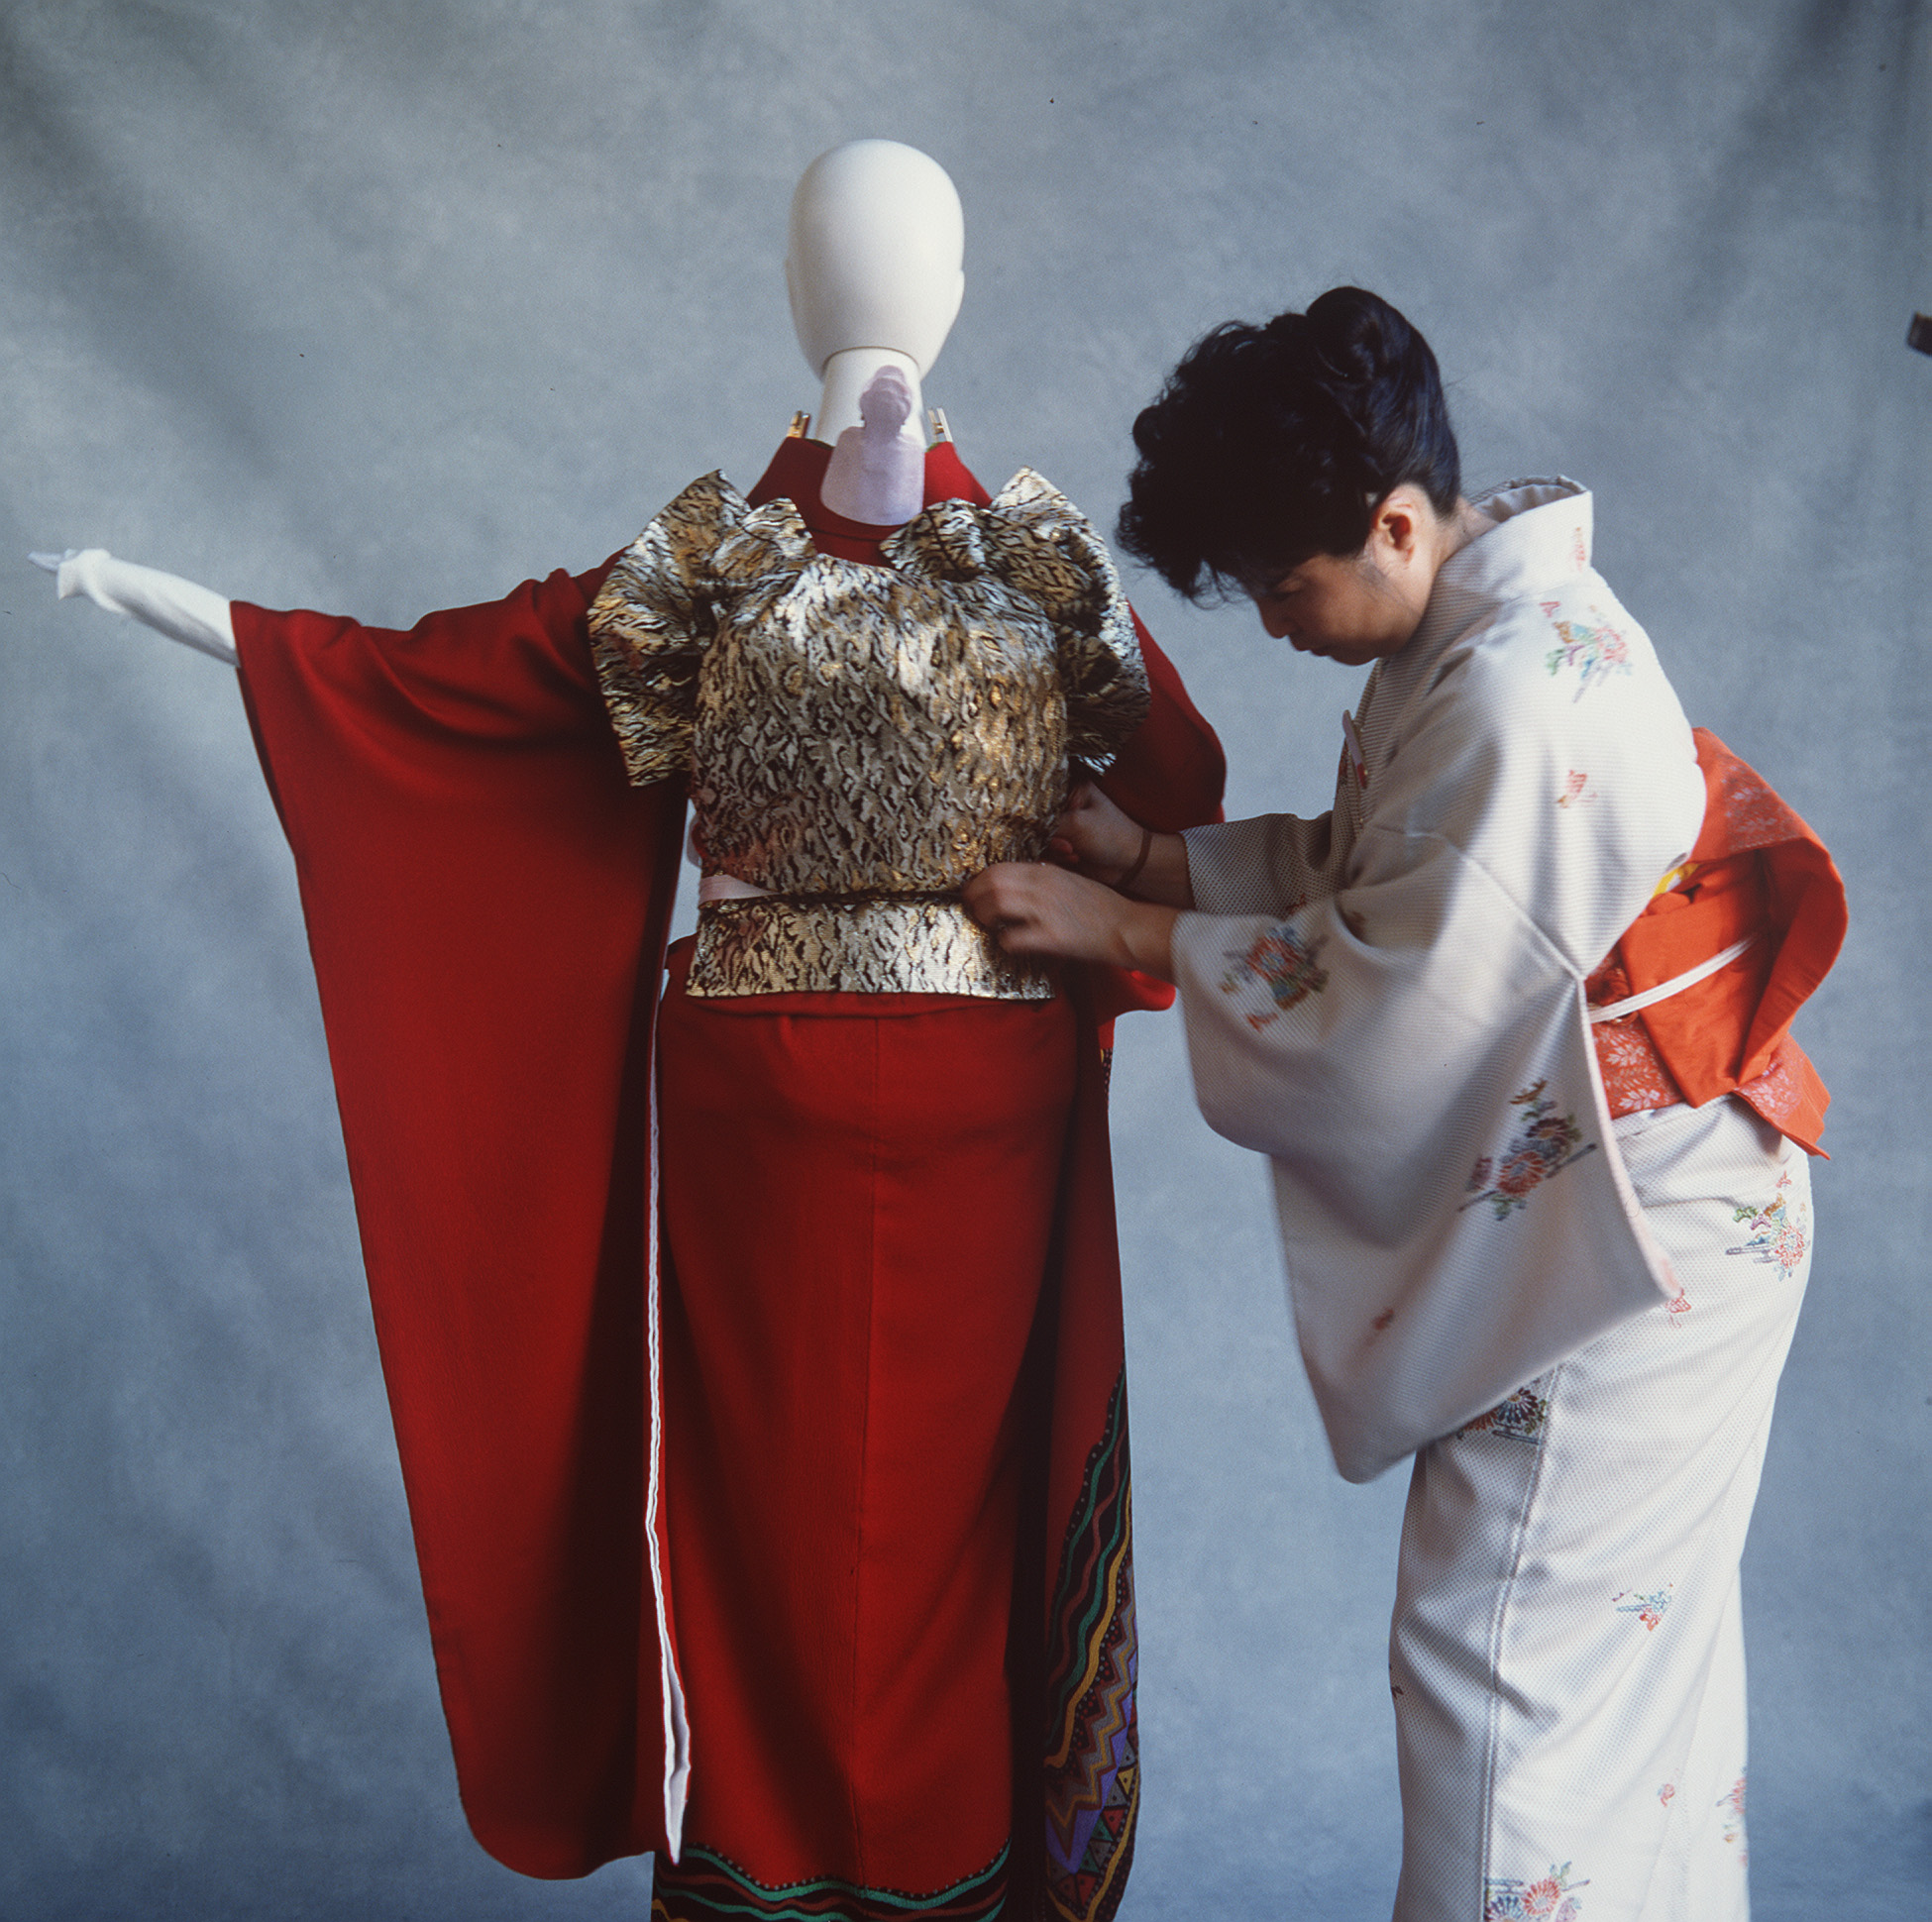 Kimono by Balarinji and Jumbana Designs